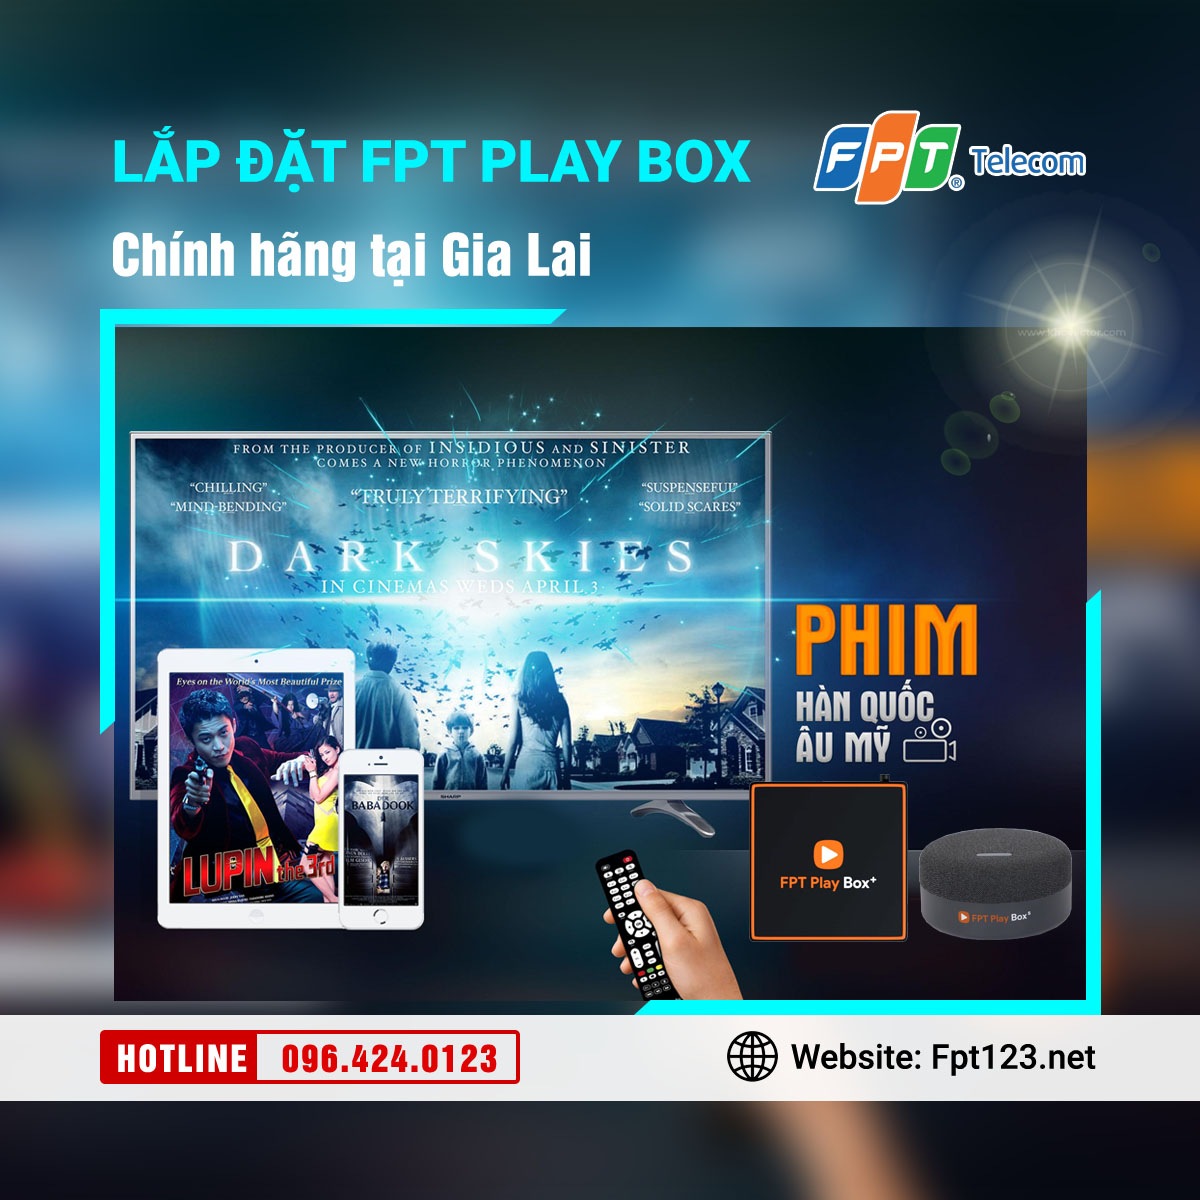 Lắp đặt FPT Play Box chính hãng tại Gia Lai